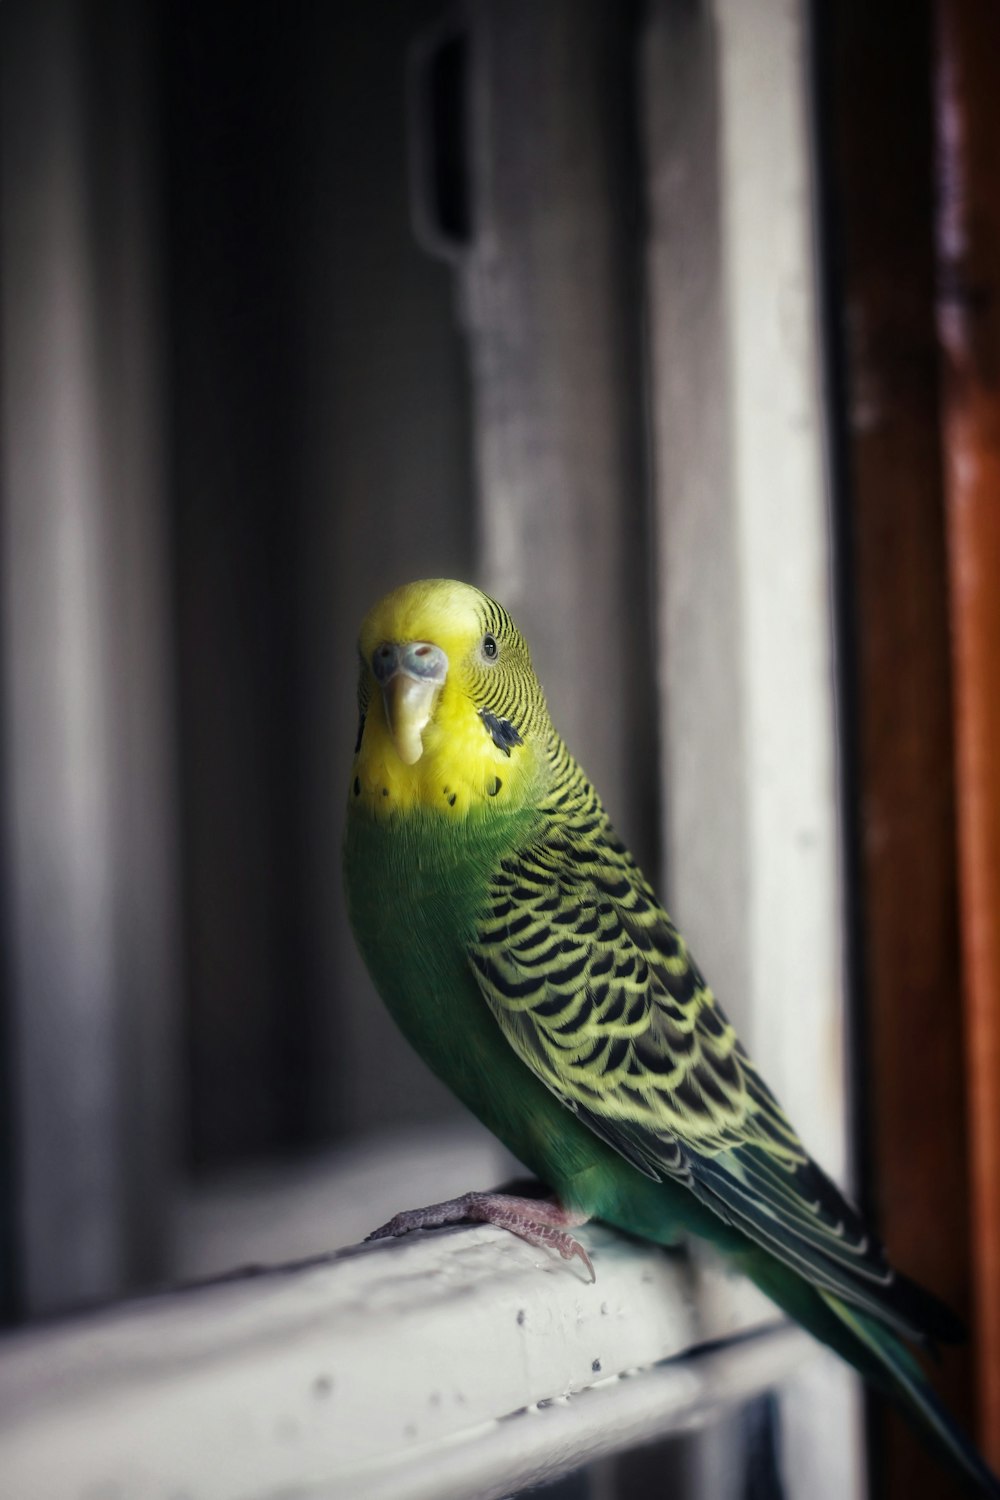 grüner und gelber Vogel auf grauer Betonoberfläche